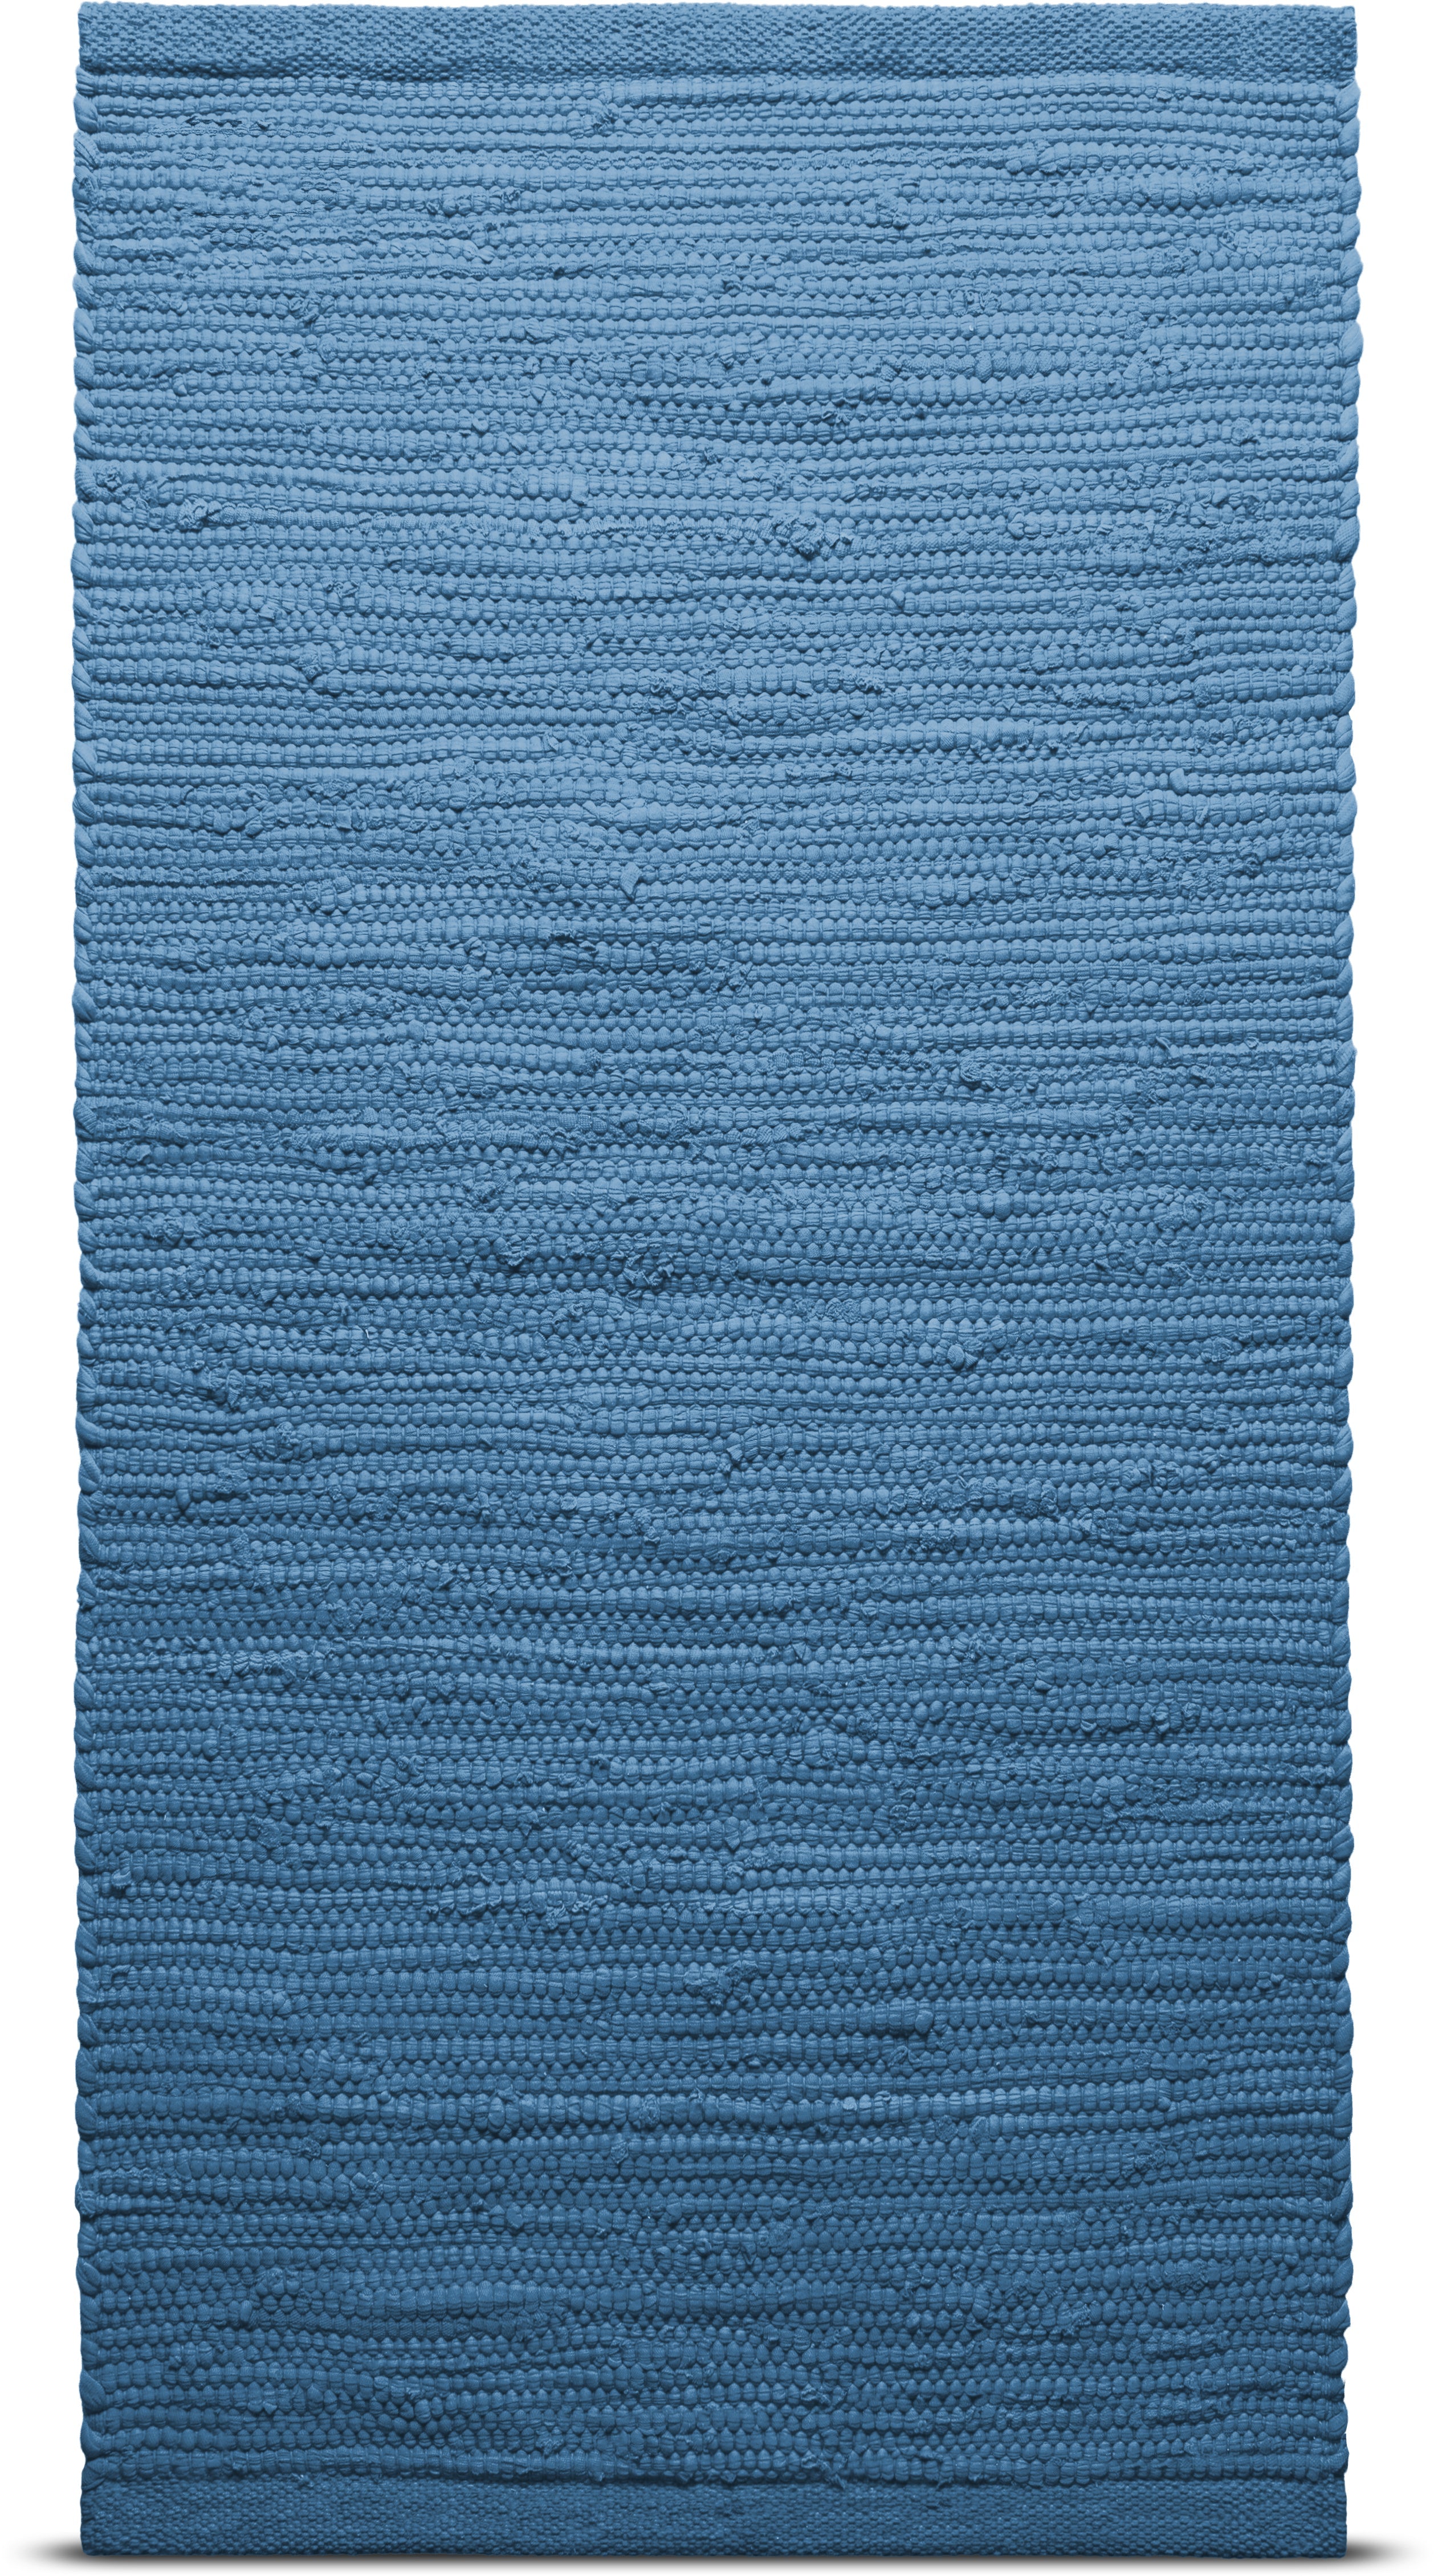 Tæppe solid bomuldstæppe 170 x 240 cm, Stillehavet